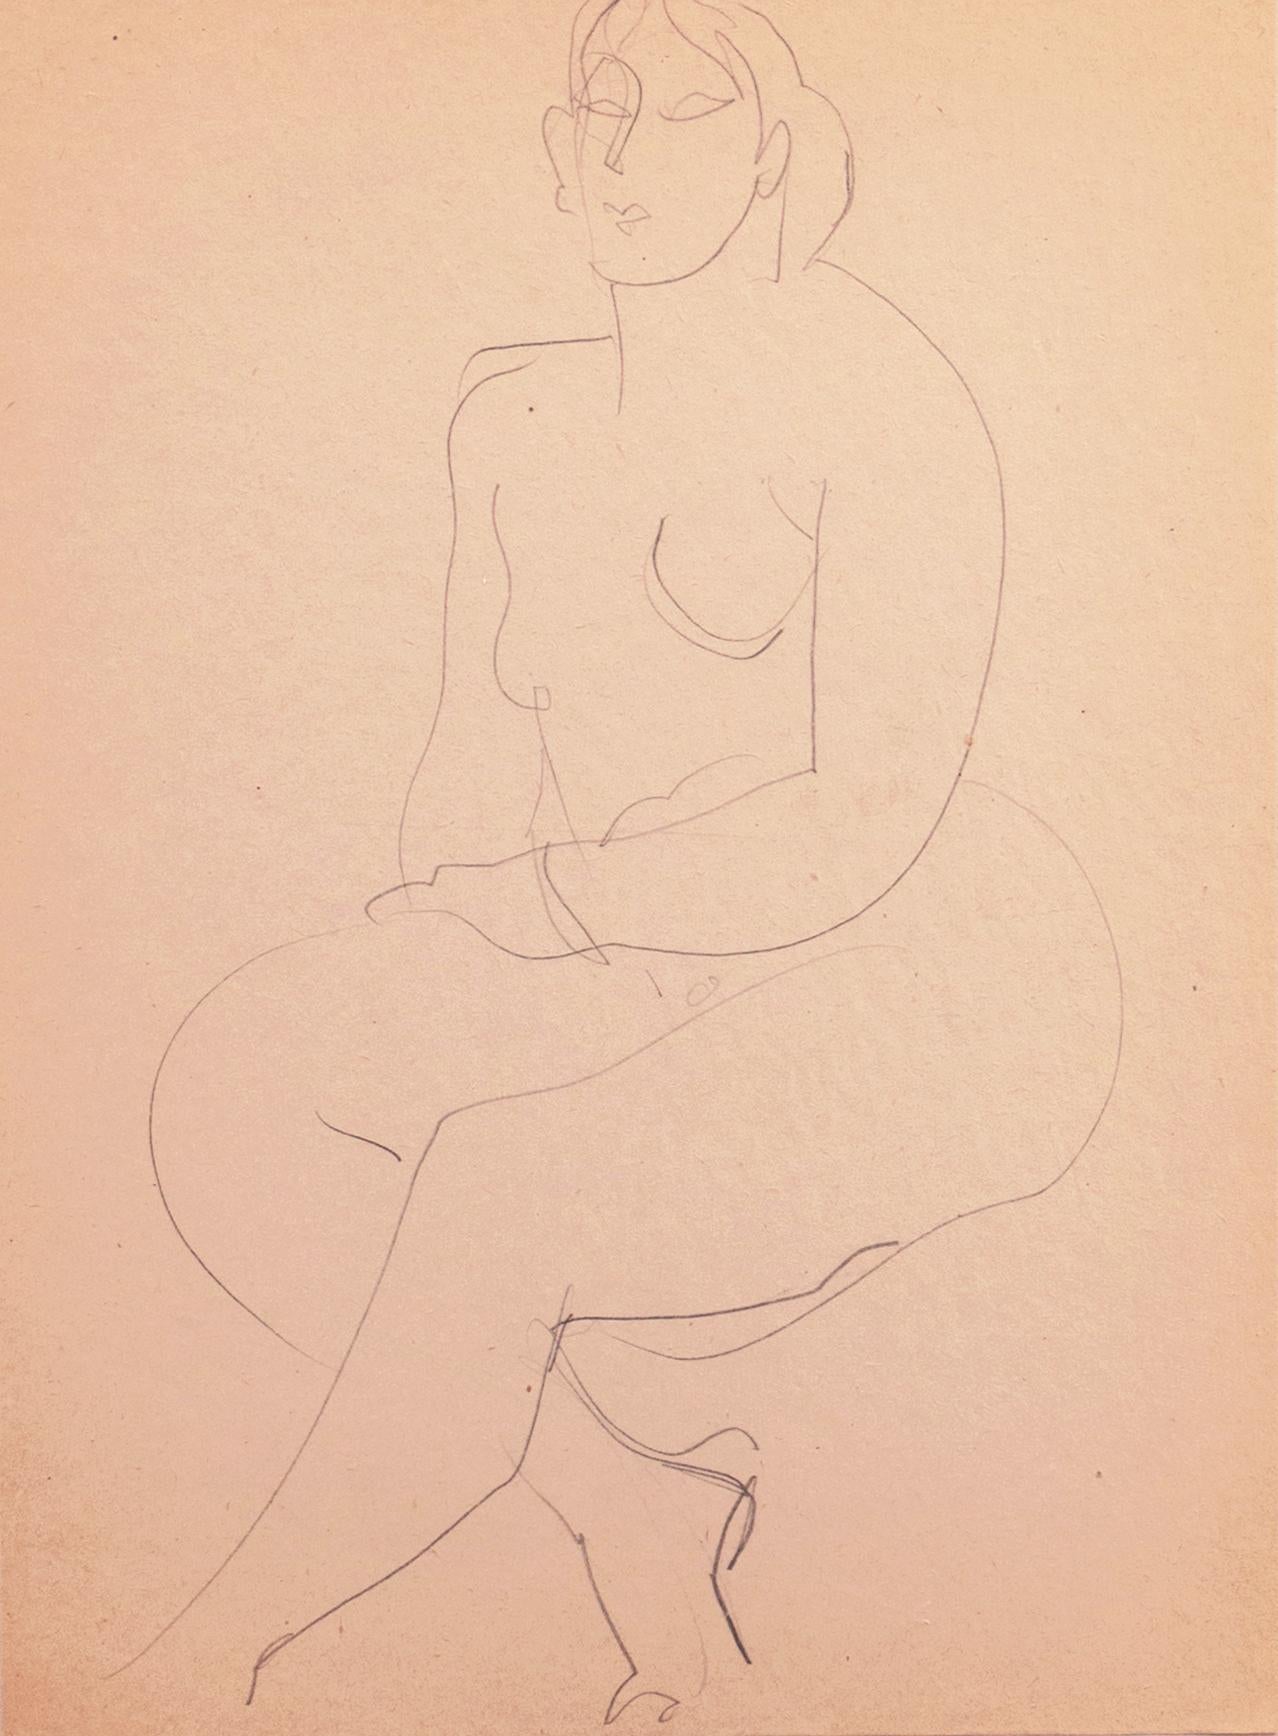 Victor Di Gesu Figurative Art - 'Seated Nude', Paris, Louvre, Académie Chaumière, Carmel, California, LACMA